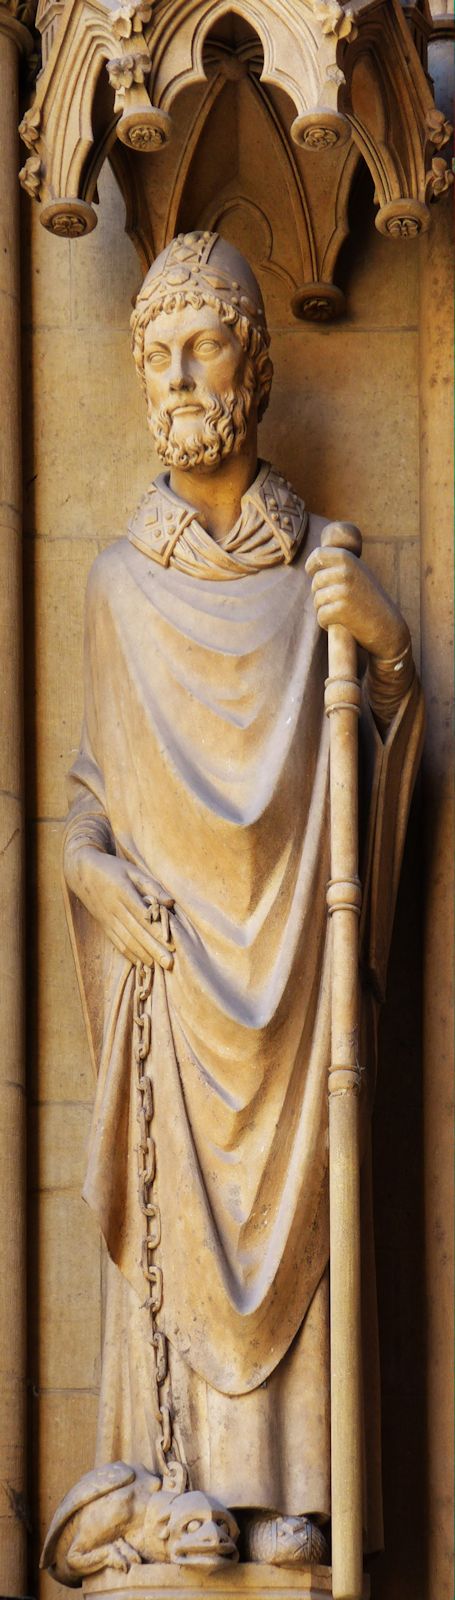 Statue: Clemens mit dem Drachen, am Stefansdom in Metz